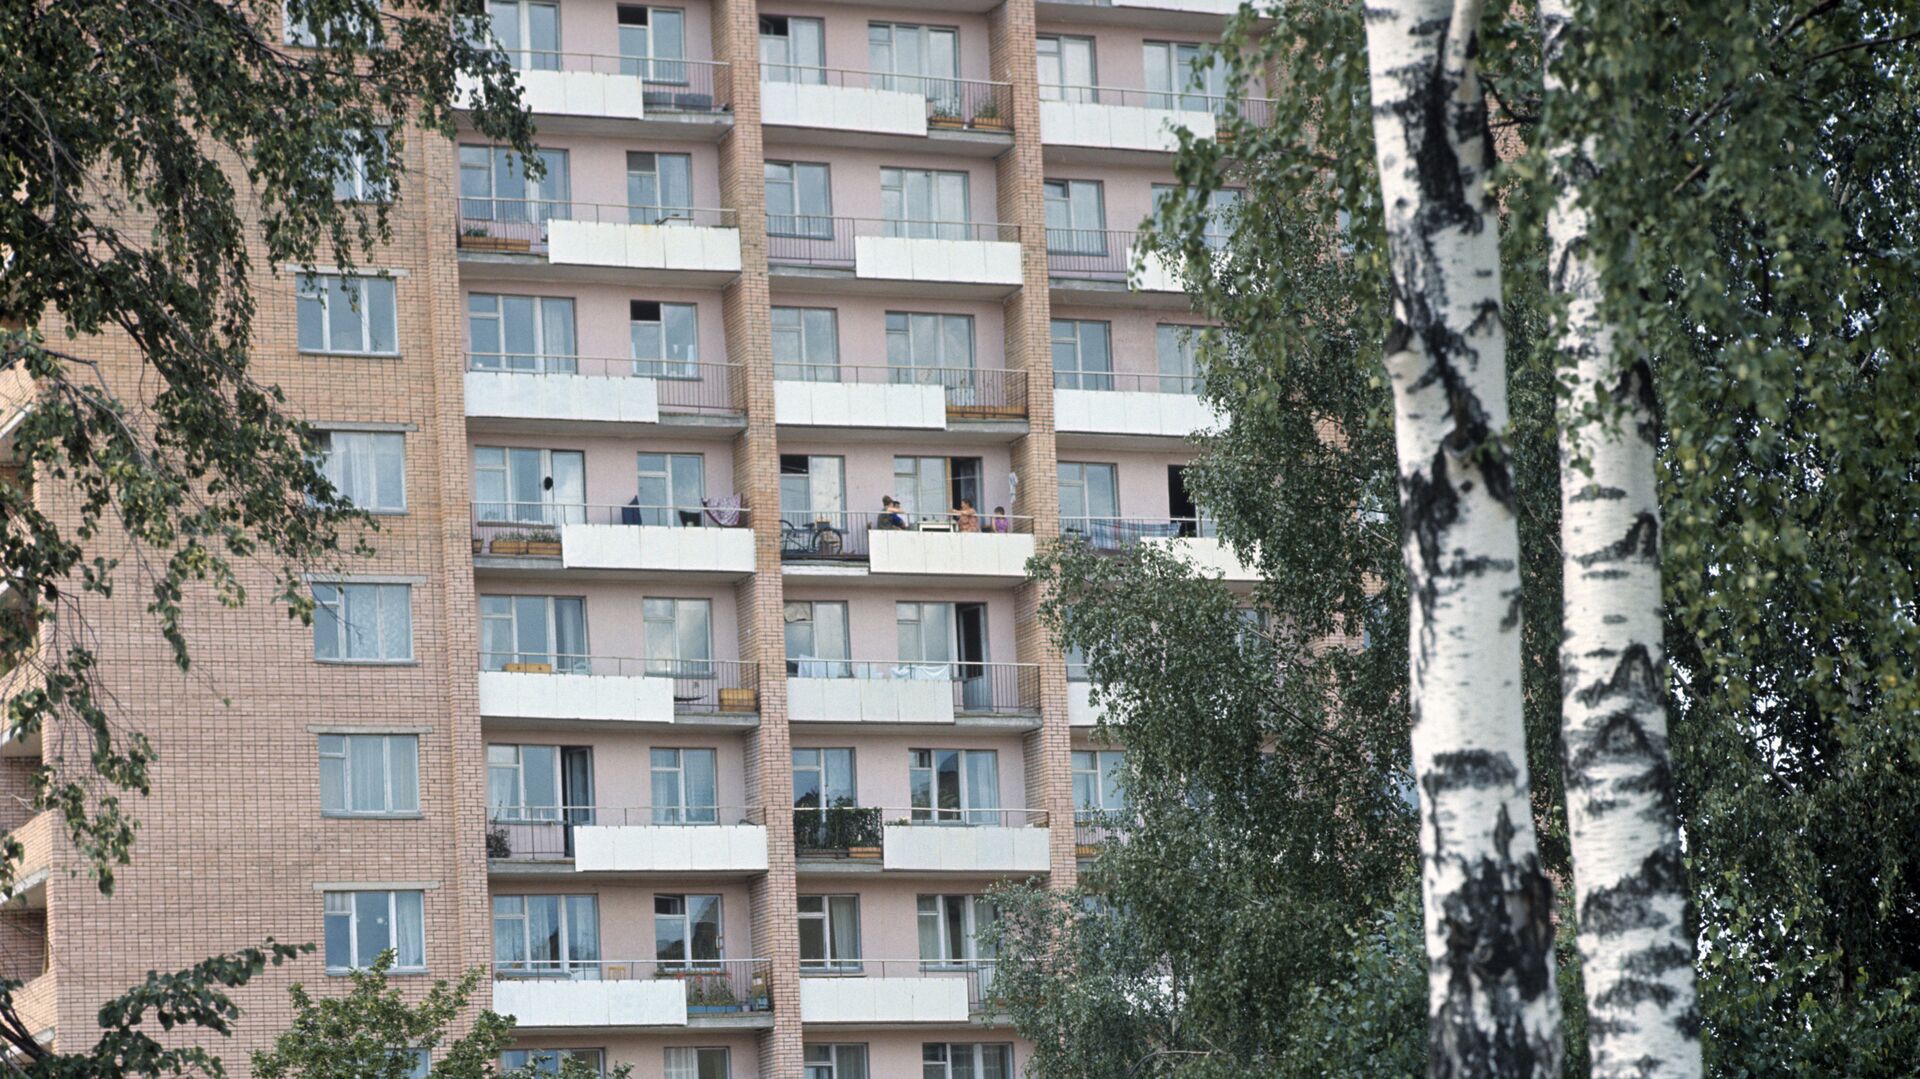 Балконы многоквартирного здания - РИА Новости, 1920, 21.10.2020